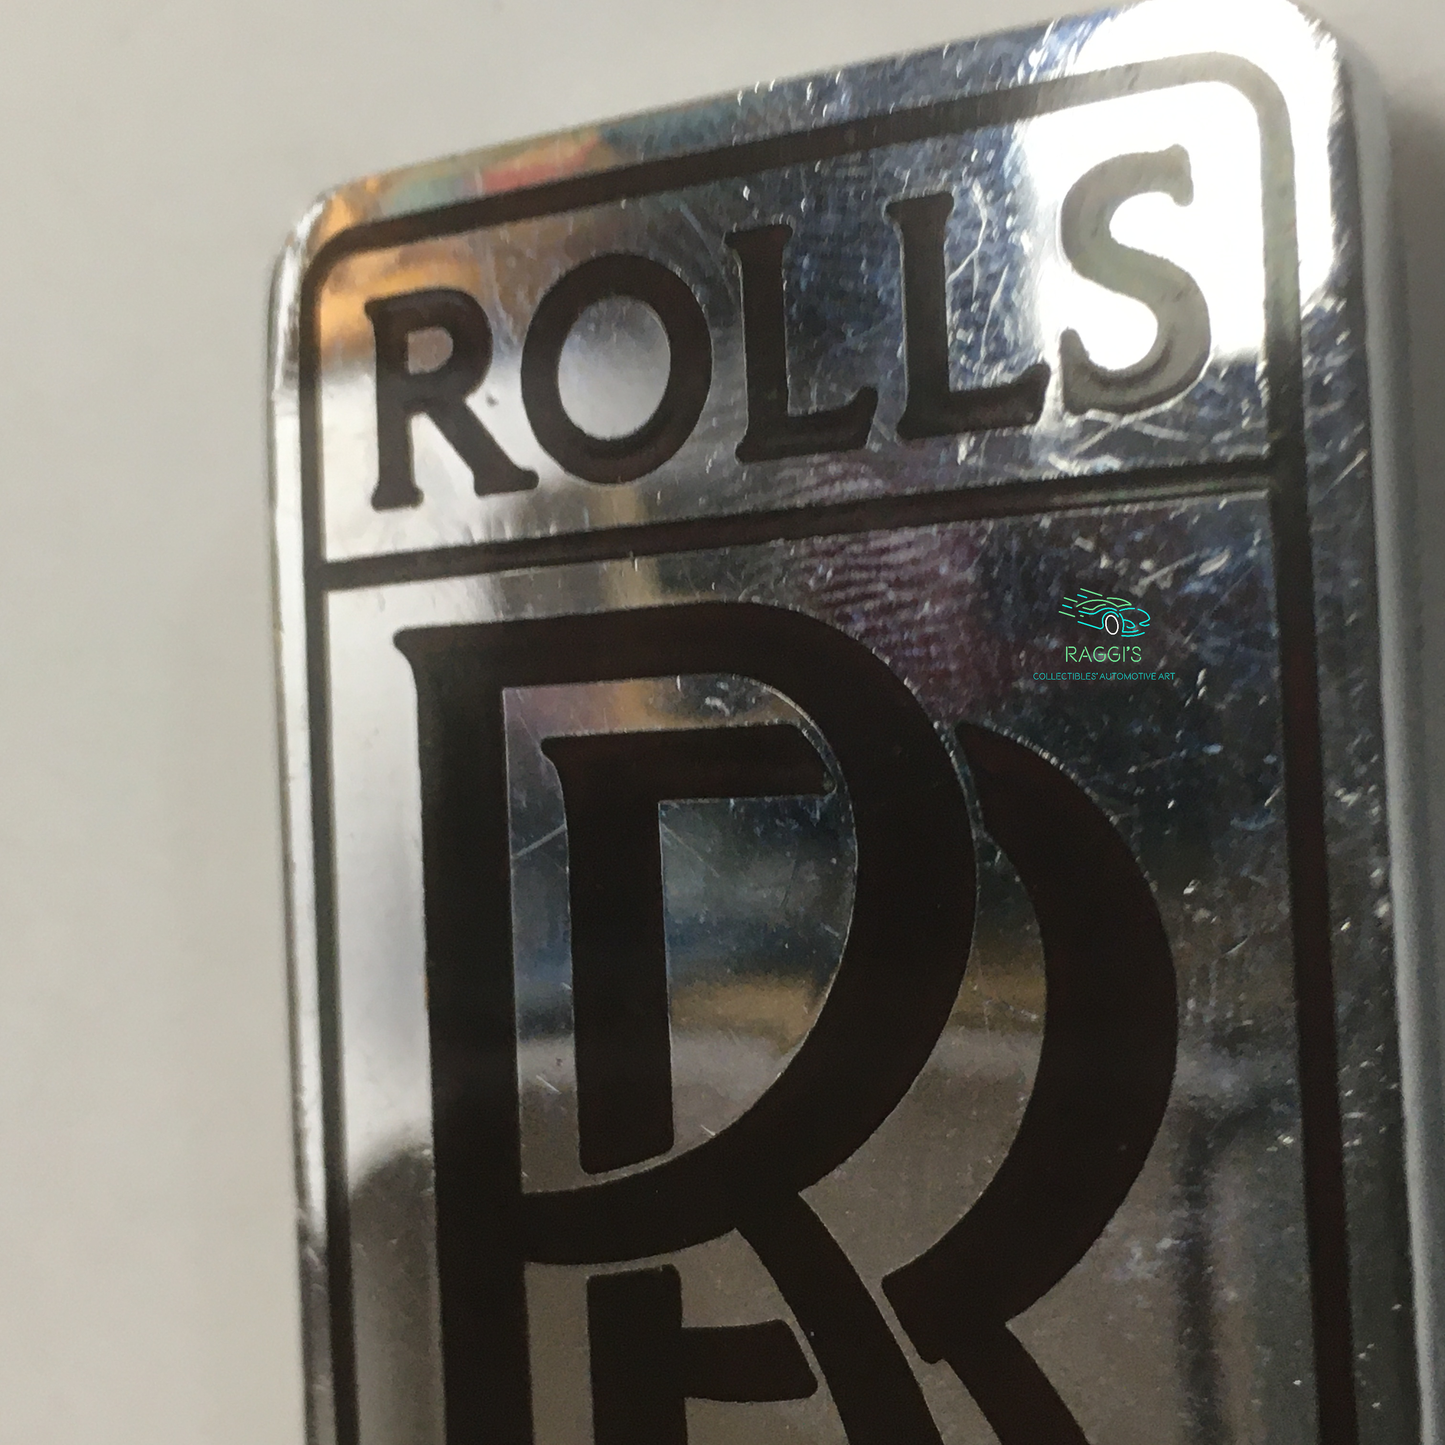 Rolls-Royce, Stemma Originale Rolls-Royce con Lettere di Colore Rosso Scuro, Montato su una Springfield Rolls-Royce, Molto Raro